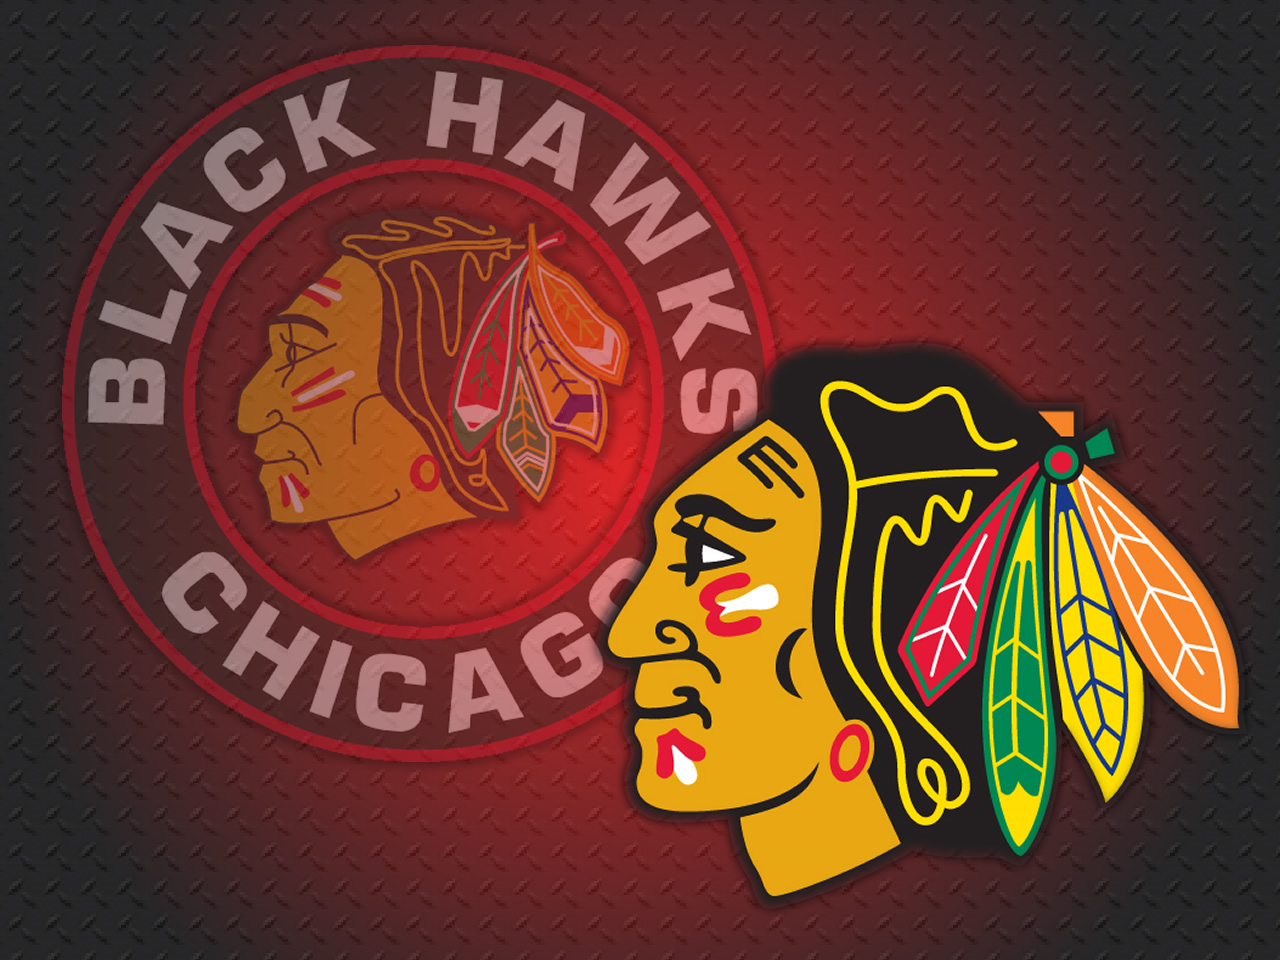 Chicago Blackhawks Wallpaper Background